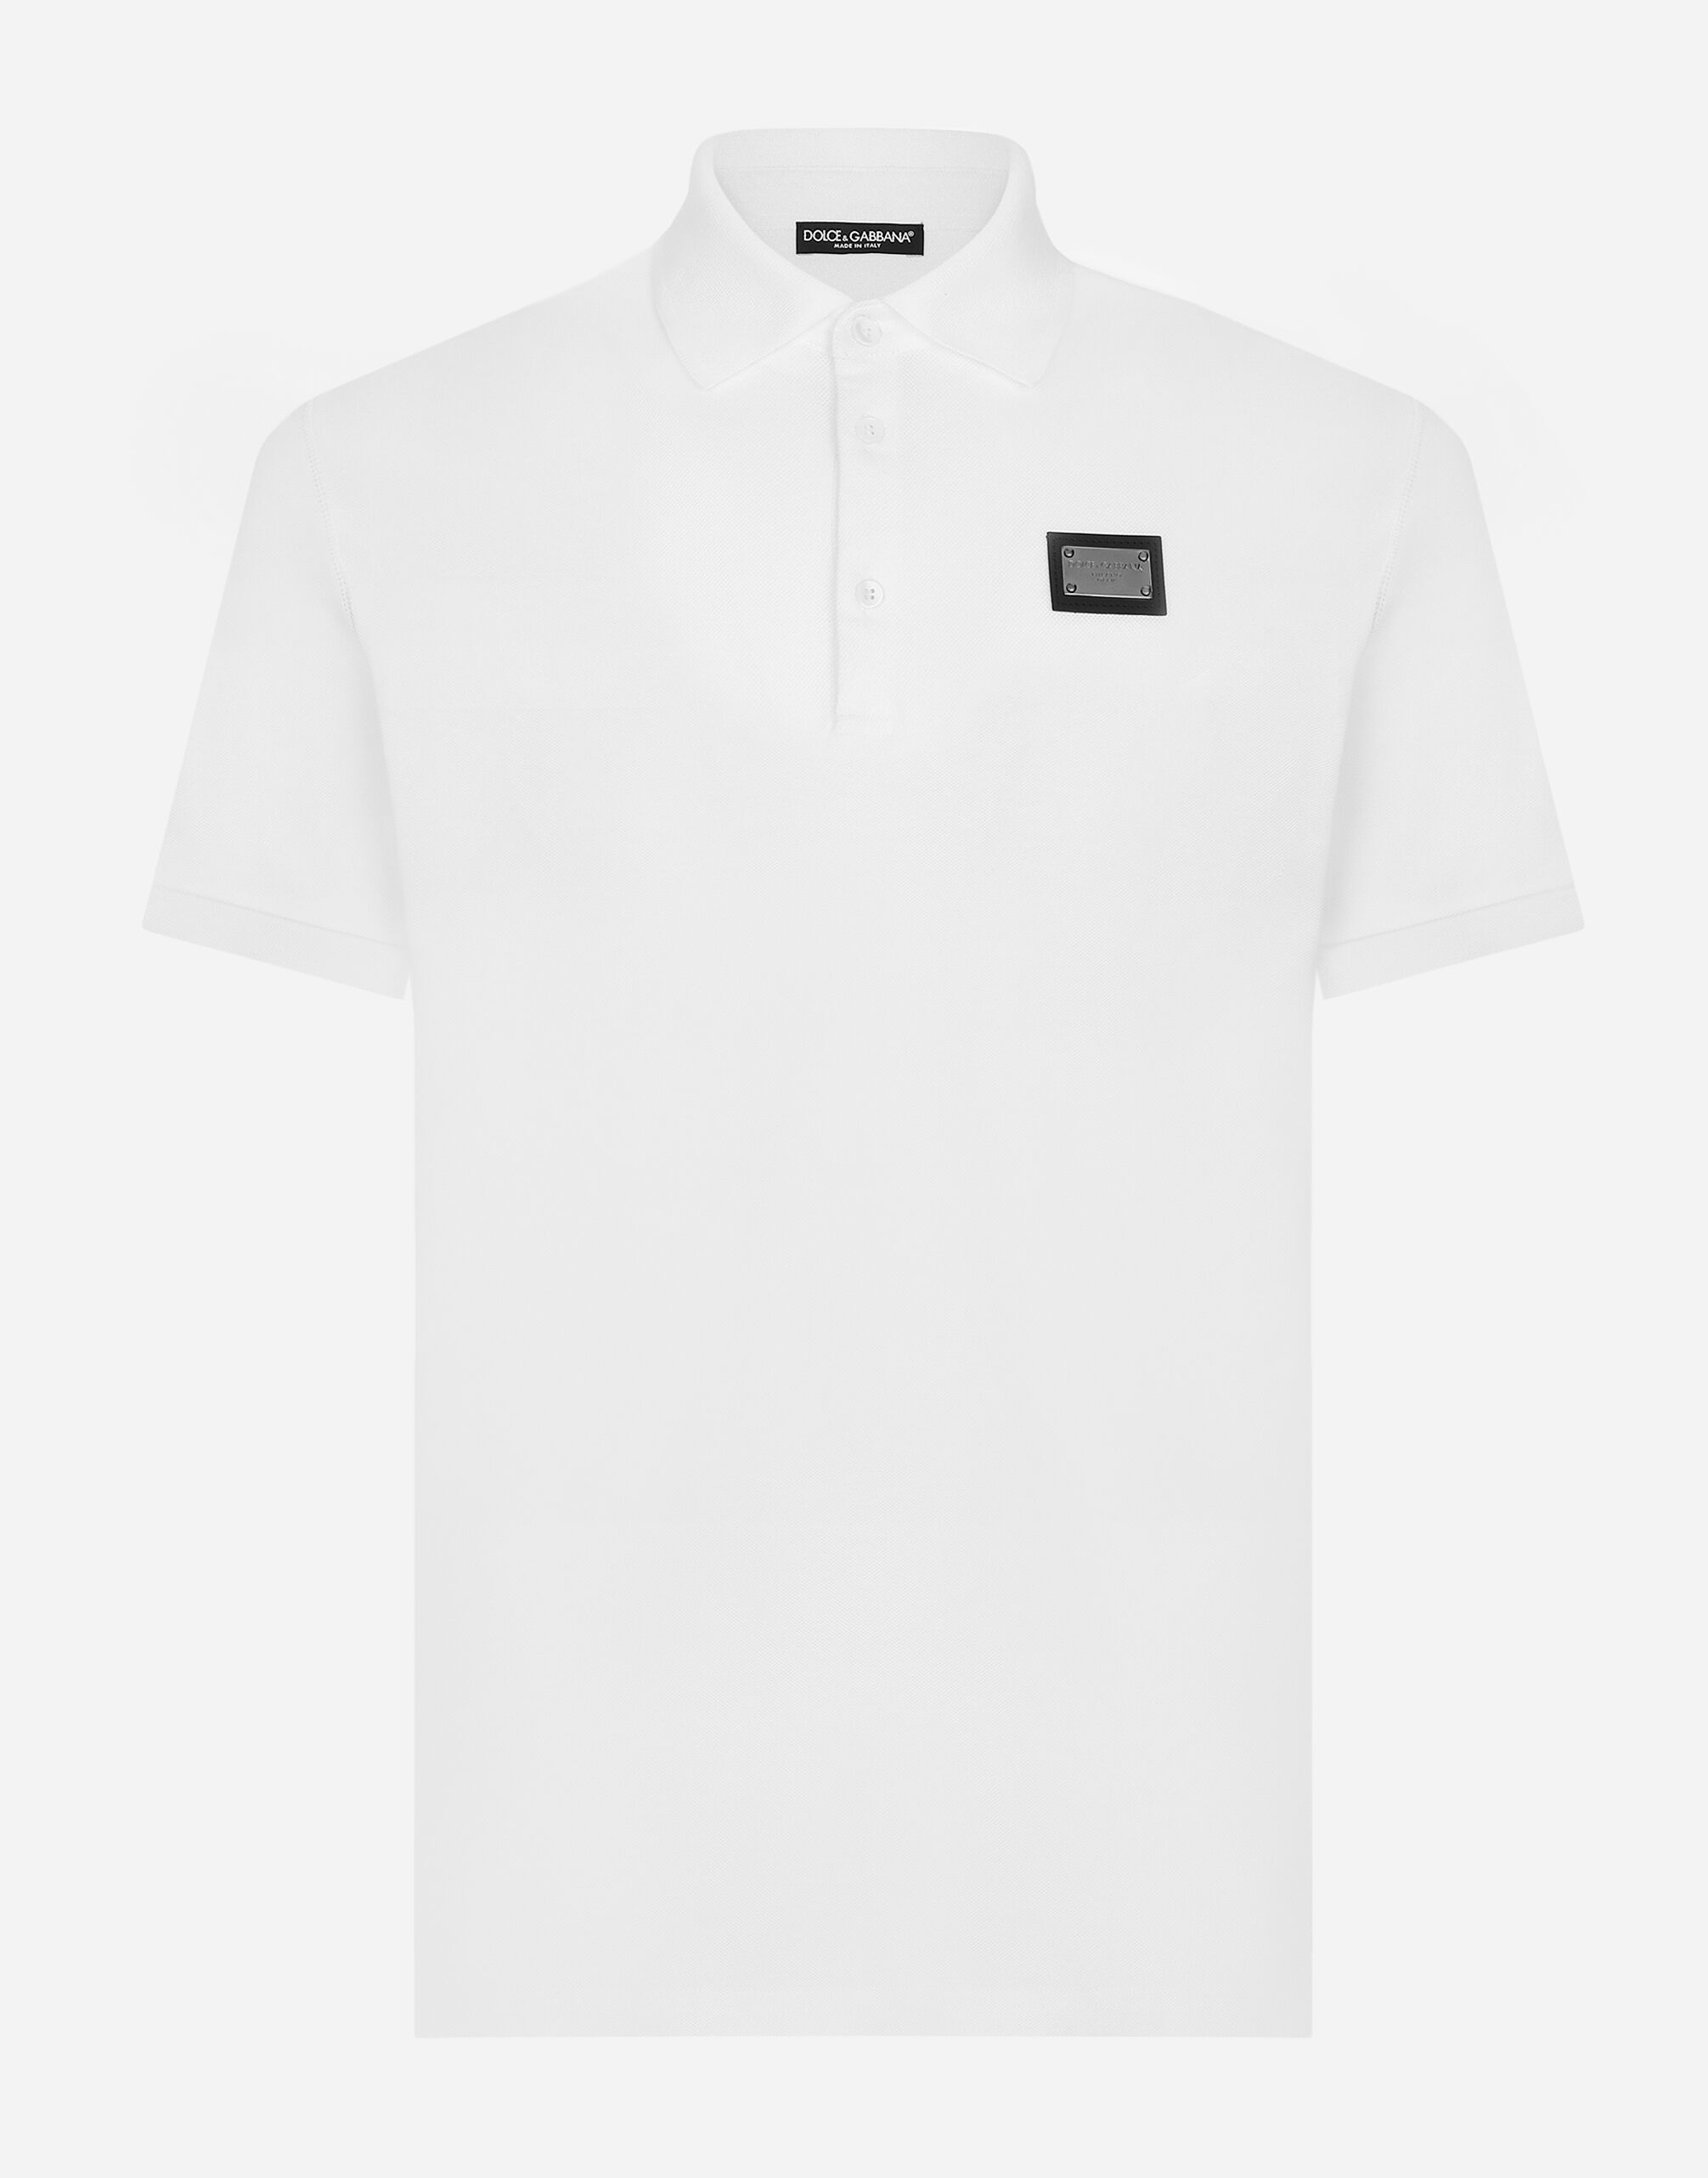 Dolce & Gabbana Polo en piqué de algodón con placa con logotipo Negro G5JG4TFU5U8